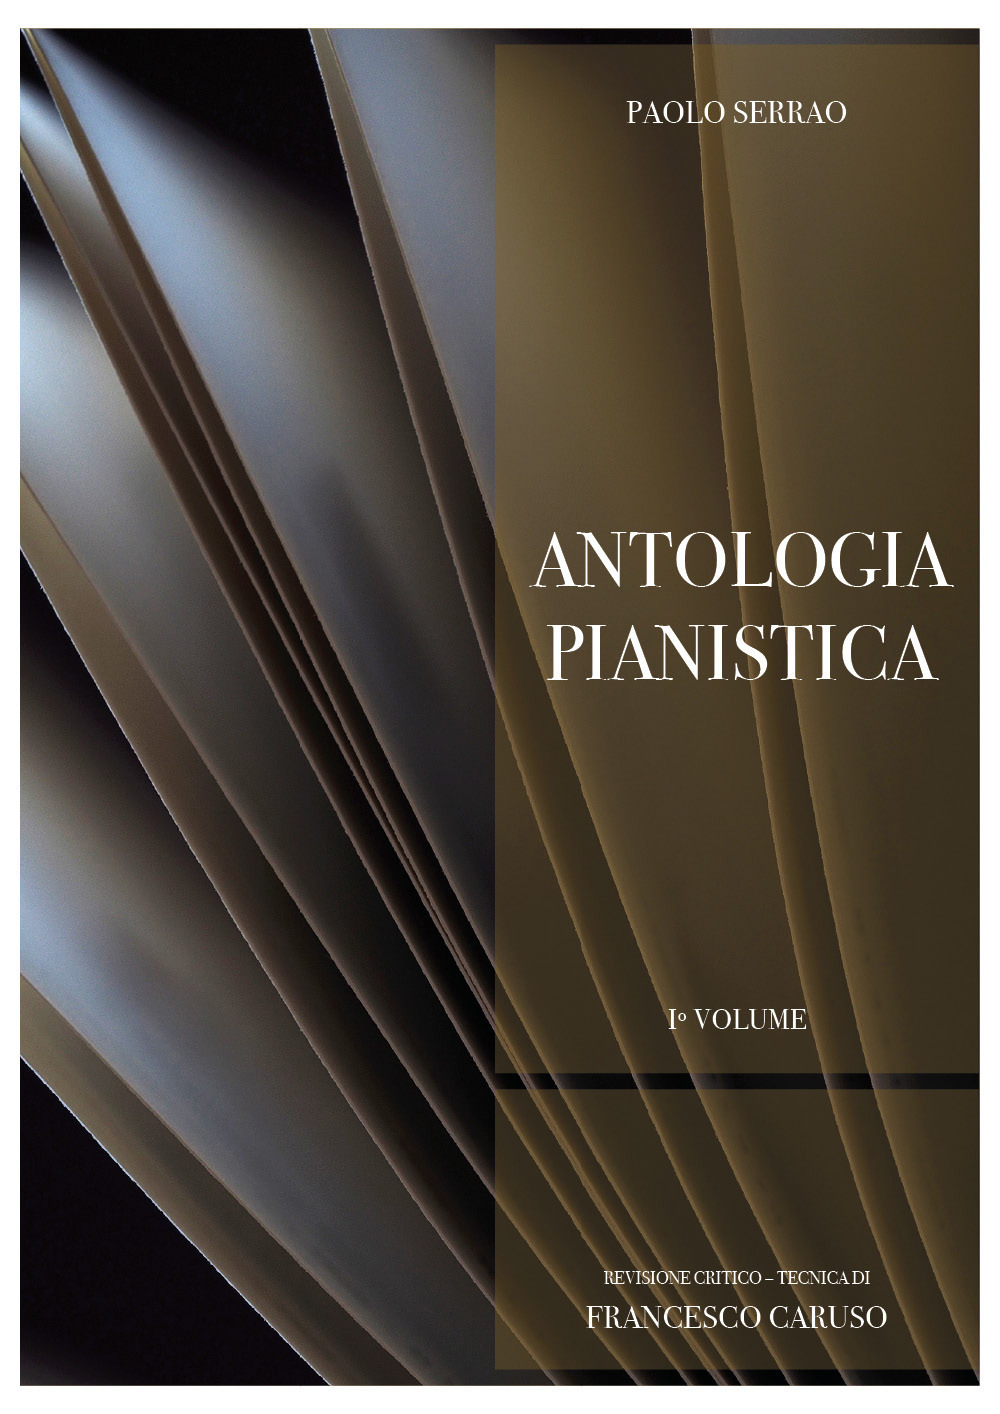 Paolo Serrao. Antologia pianistica. Vol. 1